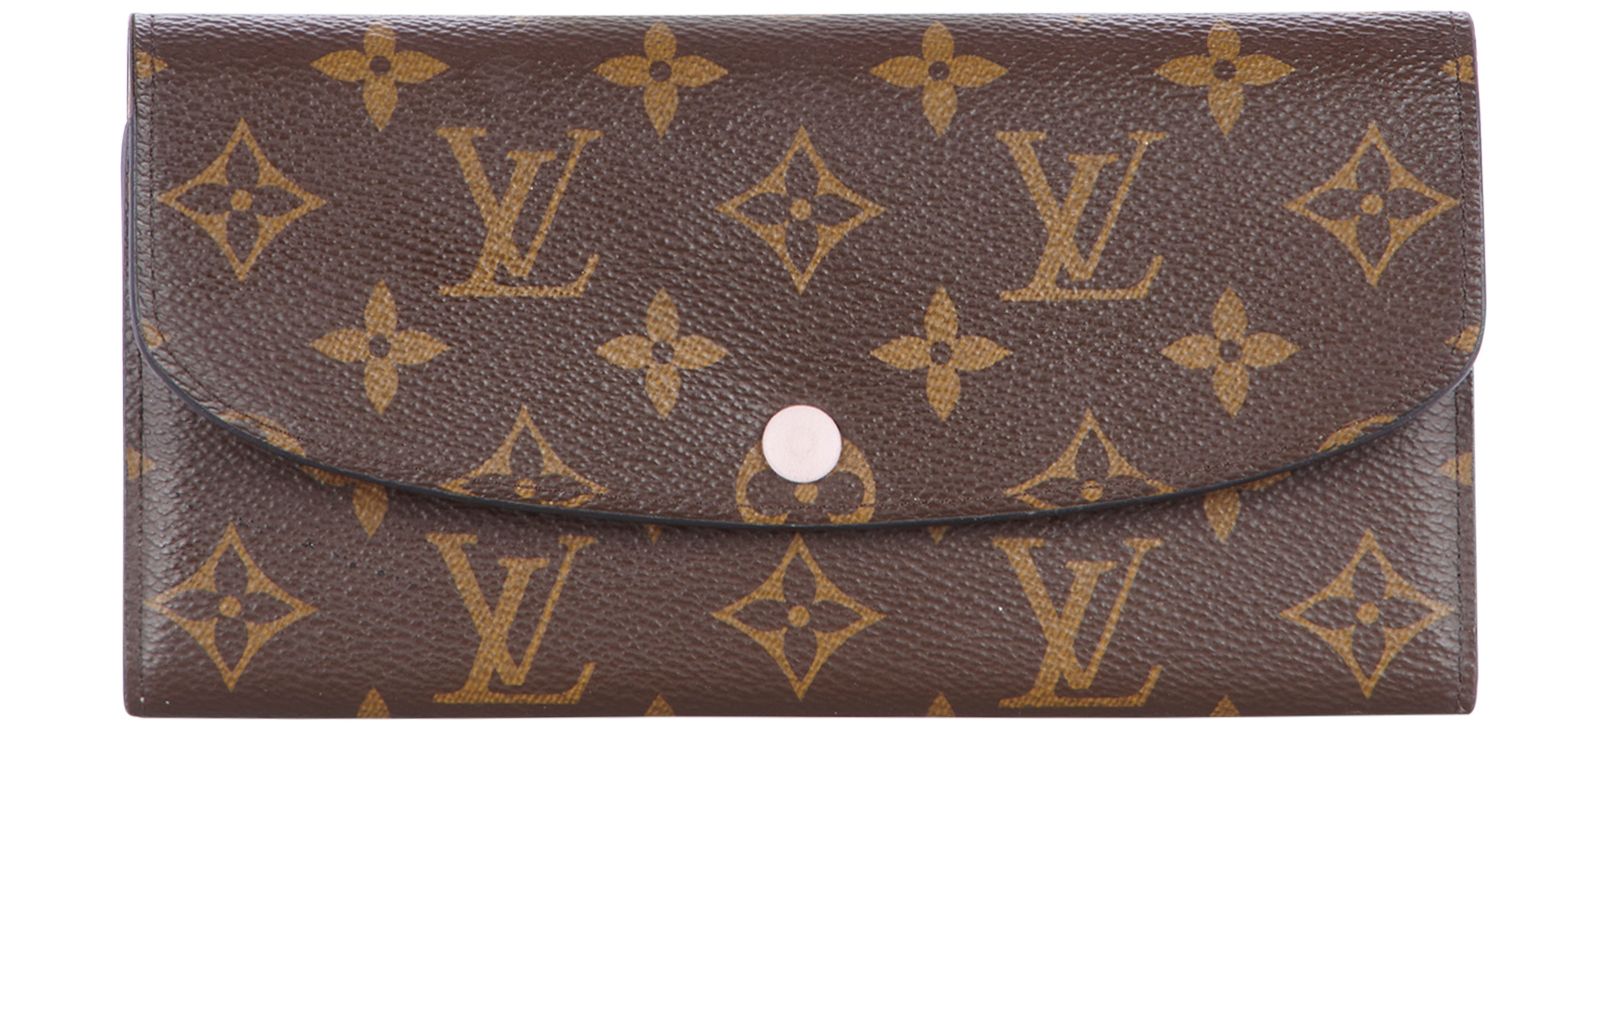 Find Louis Vuitton Wallets For Sale